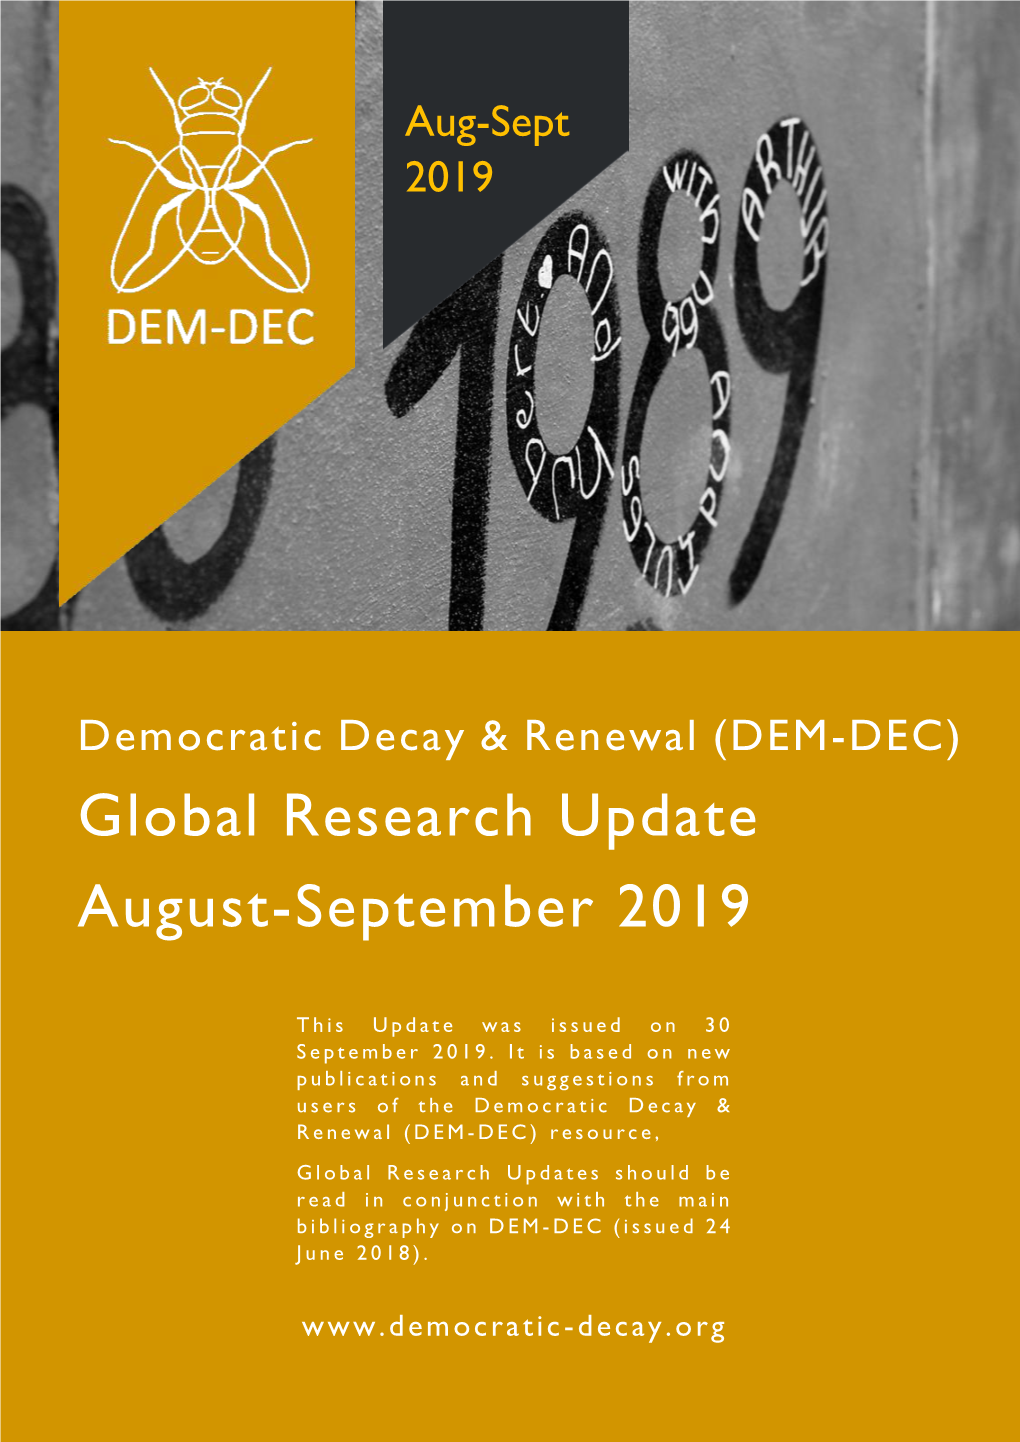 DEM-DEC Global Research Update